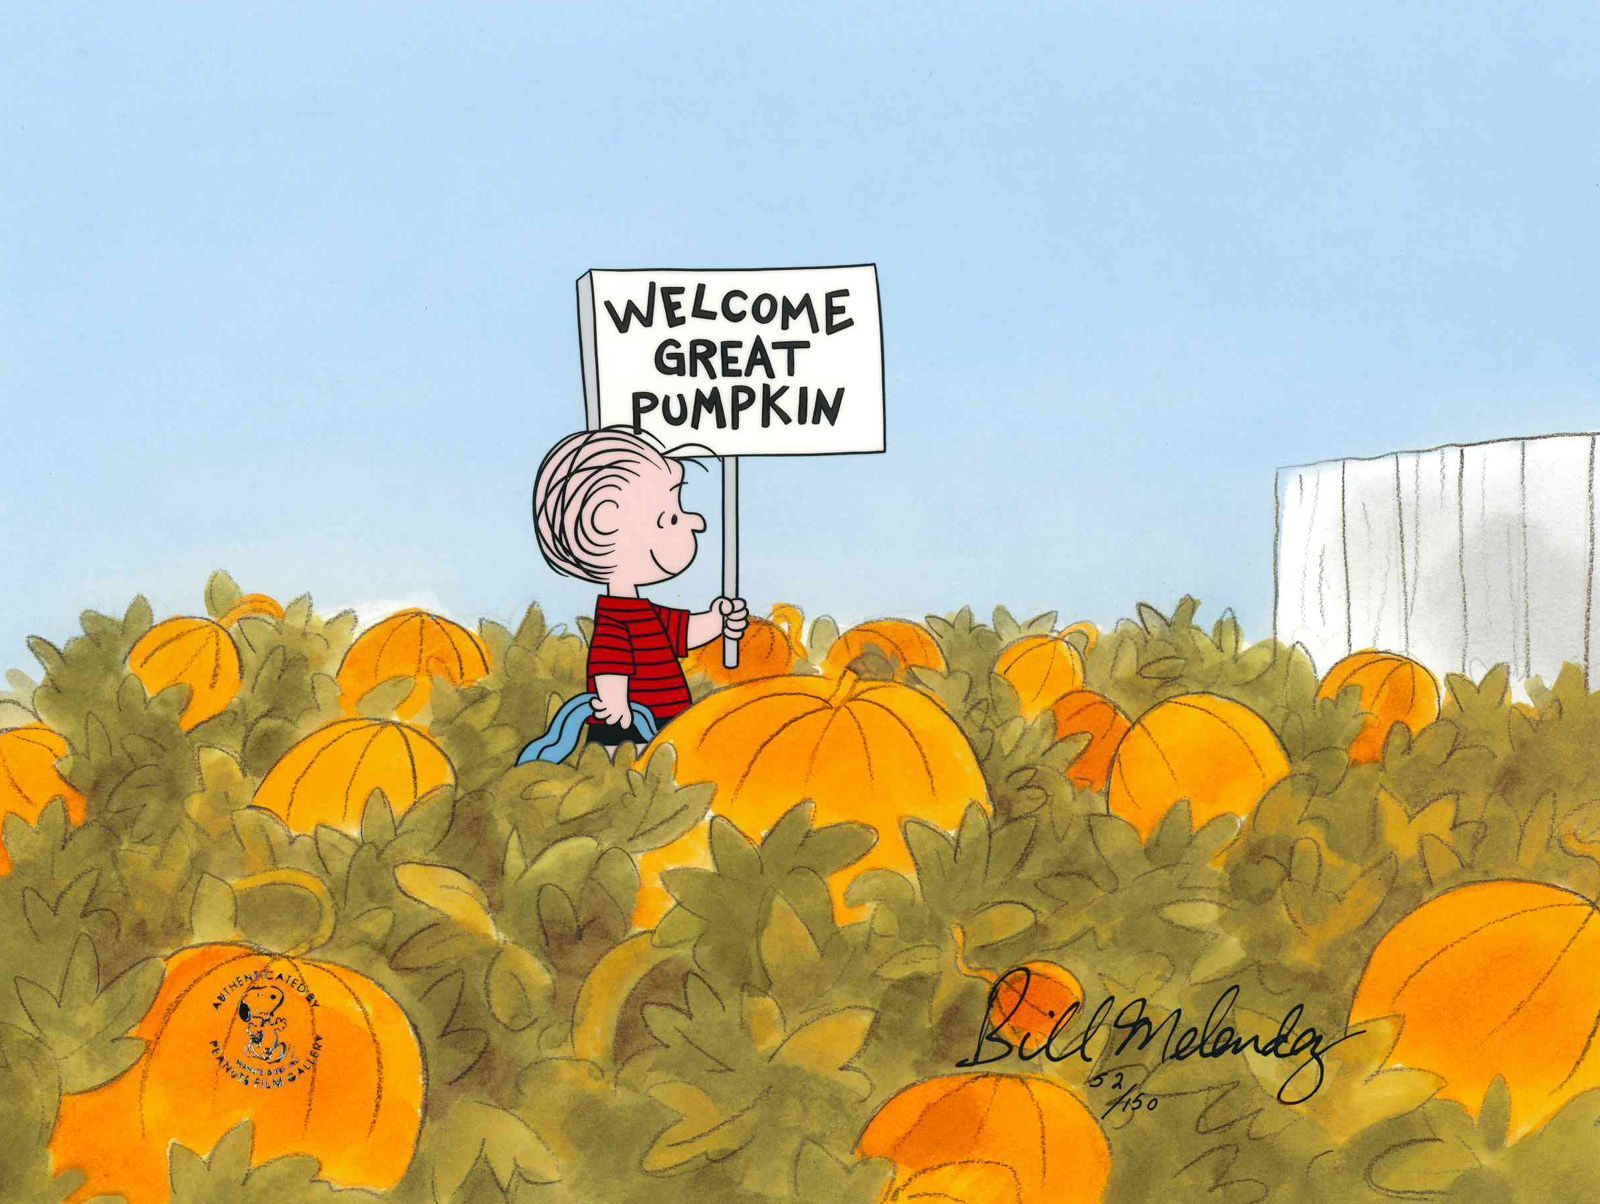 Welcome Great Pumpkin!. Pumpkin wallpaper, Halloween wallpaper, Halloween pumpkins